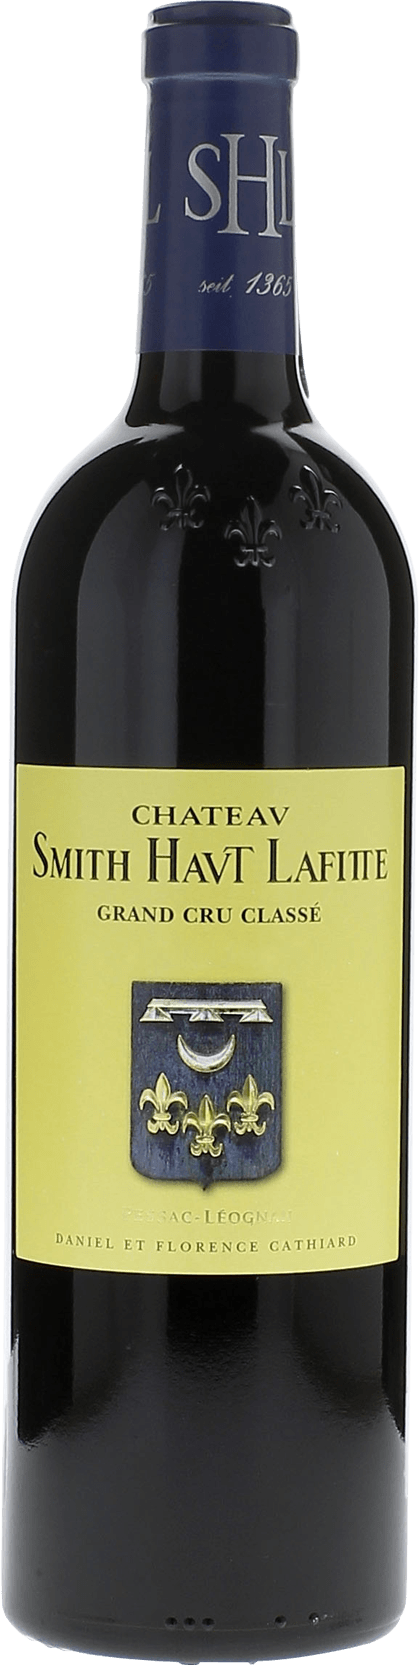 Smith haut lafitte 1991 Grand Cru Class Graves, Bordeaux rouge